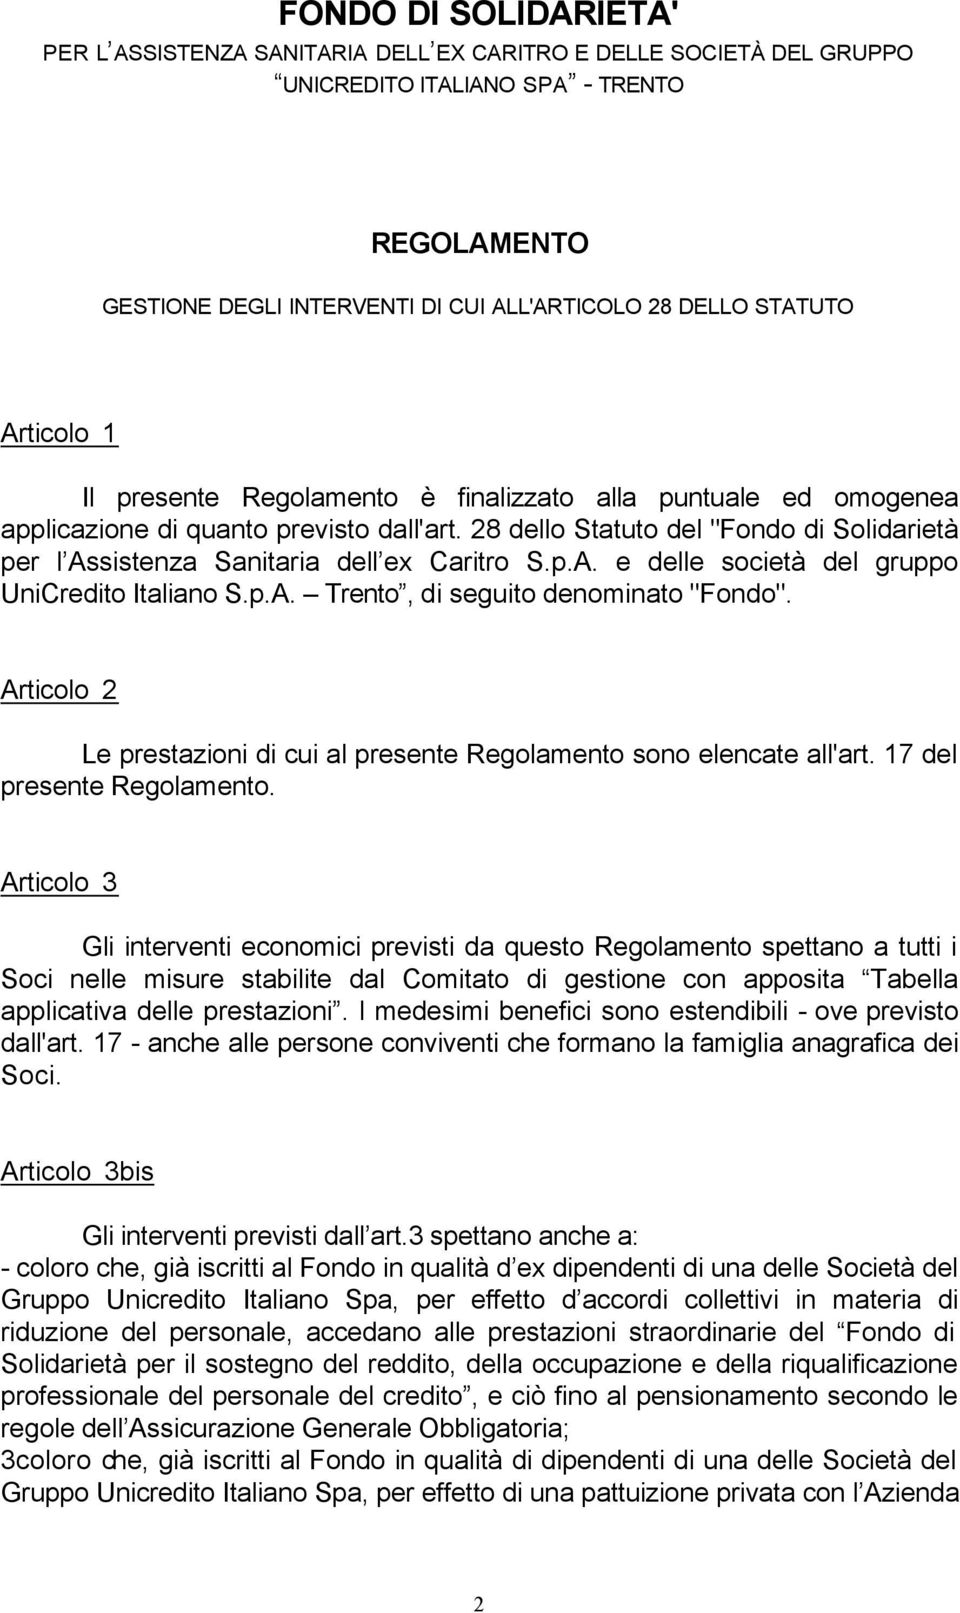 28 dello Statuto del "Fondo di Solidarietà per l Assistenza Sanitaria dell ex Caritro S.p.A. e delle società del gruppo UniCredito Italiano S.p.A. Trento, di seguito denominato "Fondo".